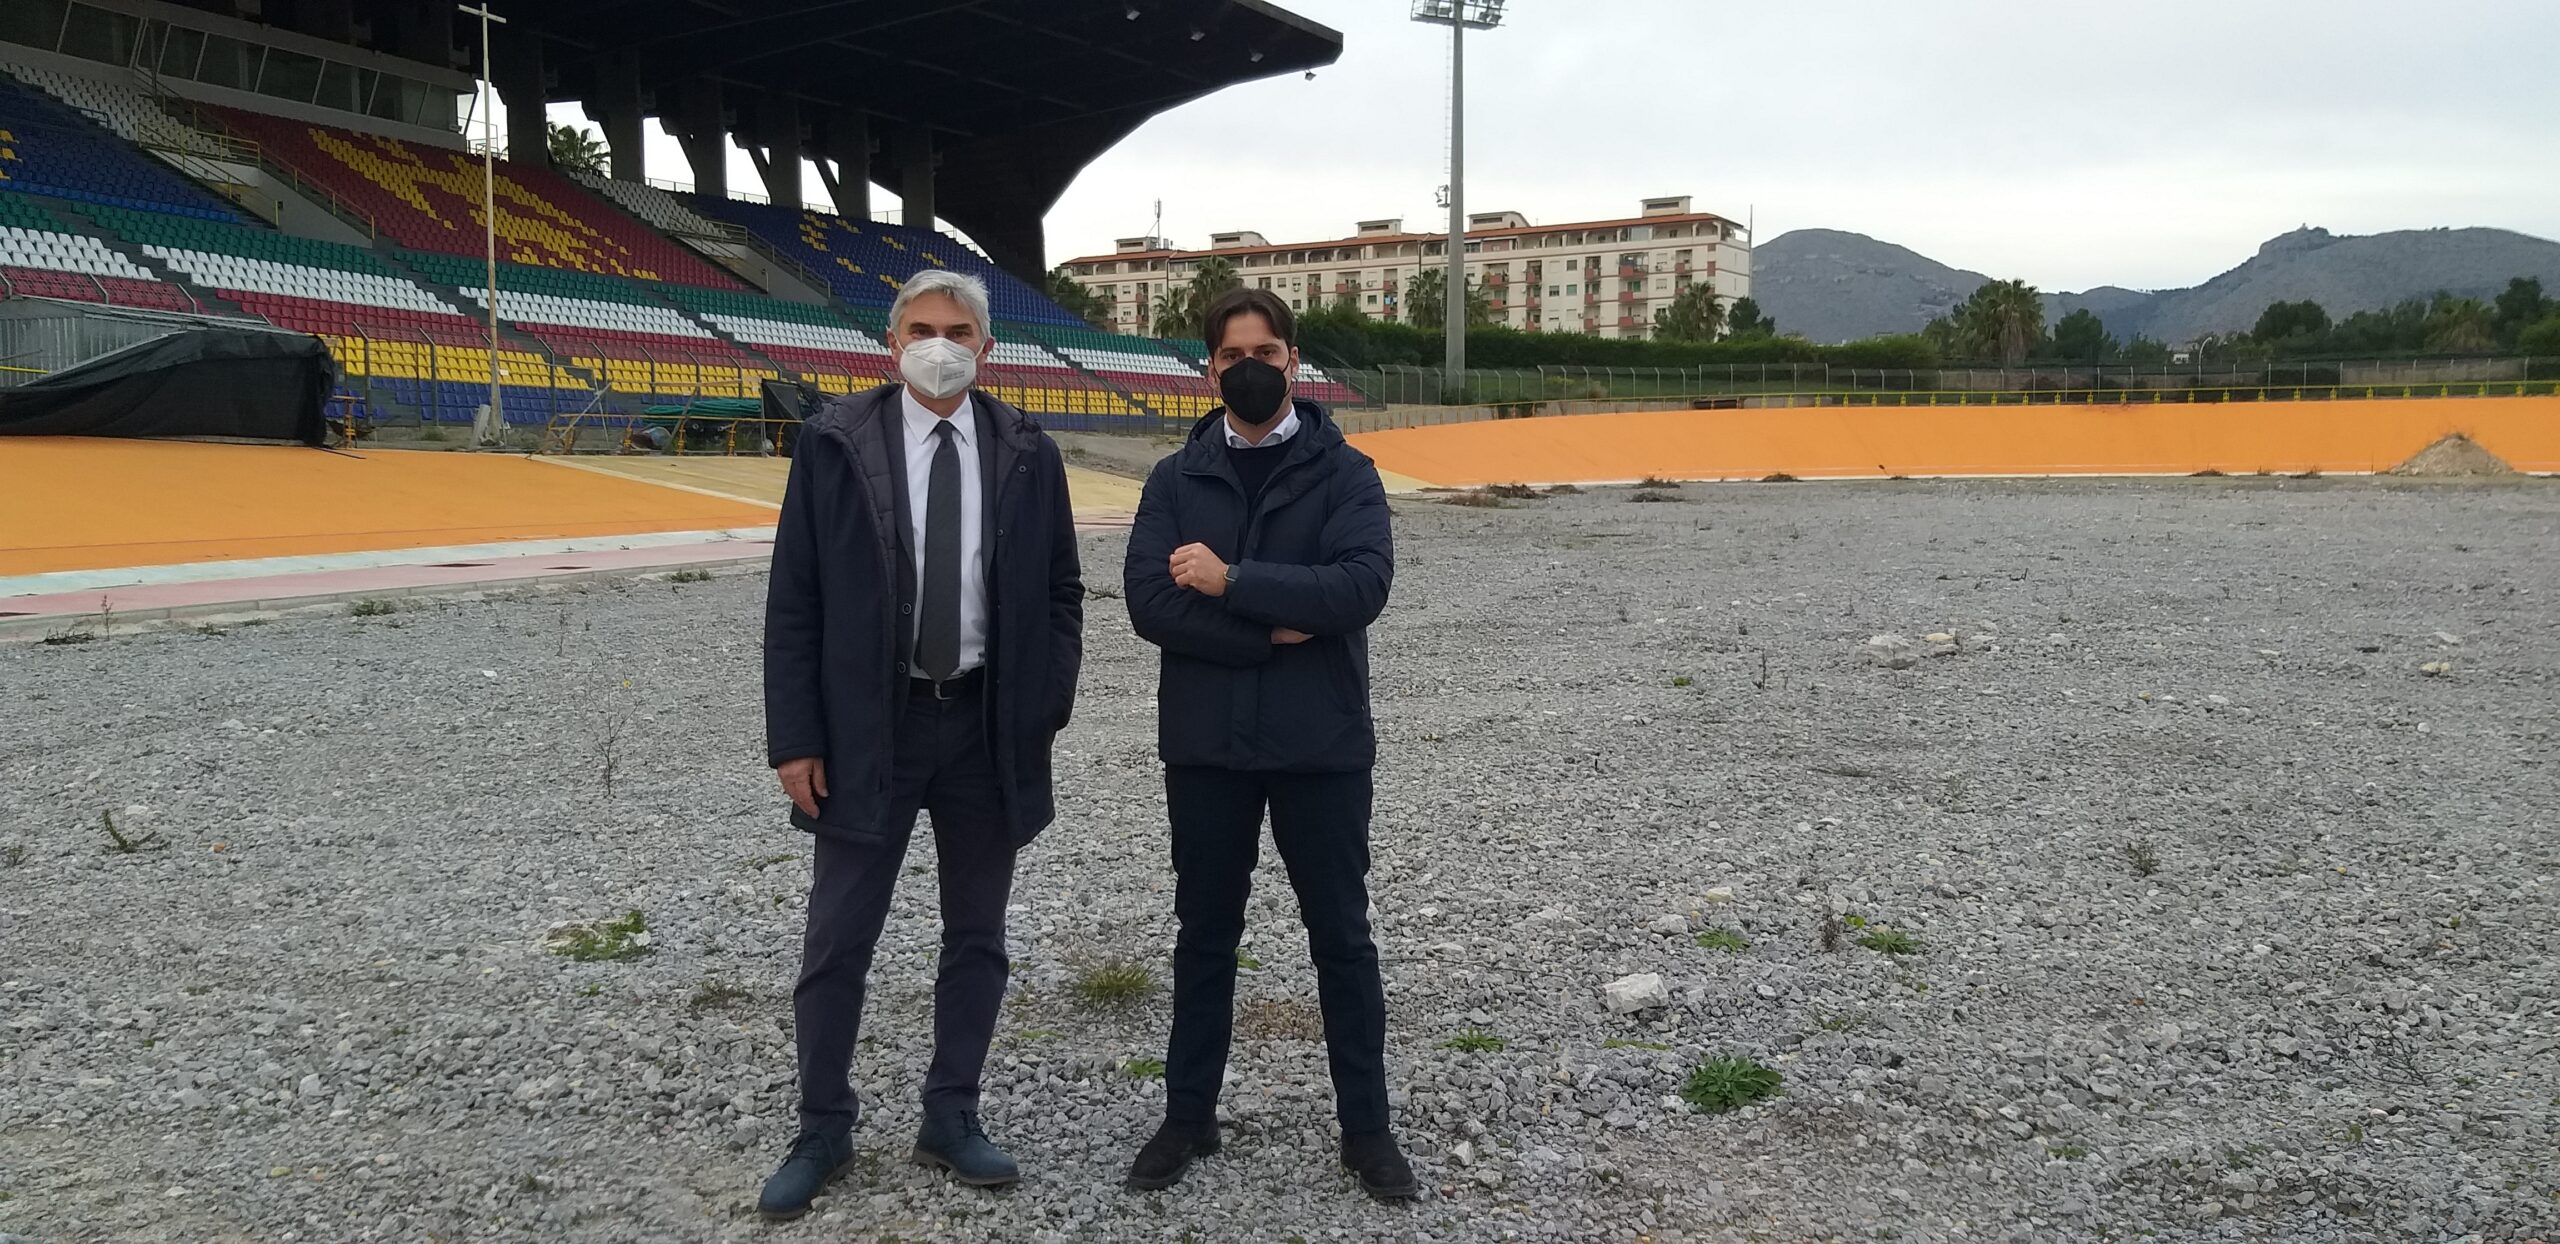 Velodromo di Palermo, tutto tace: lavori fermi, soldi e materiali sprecati